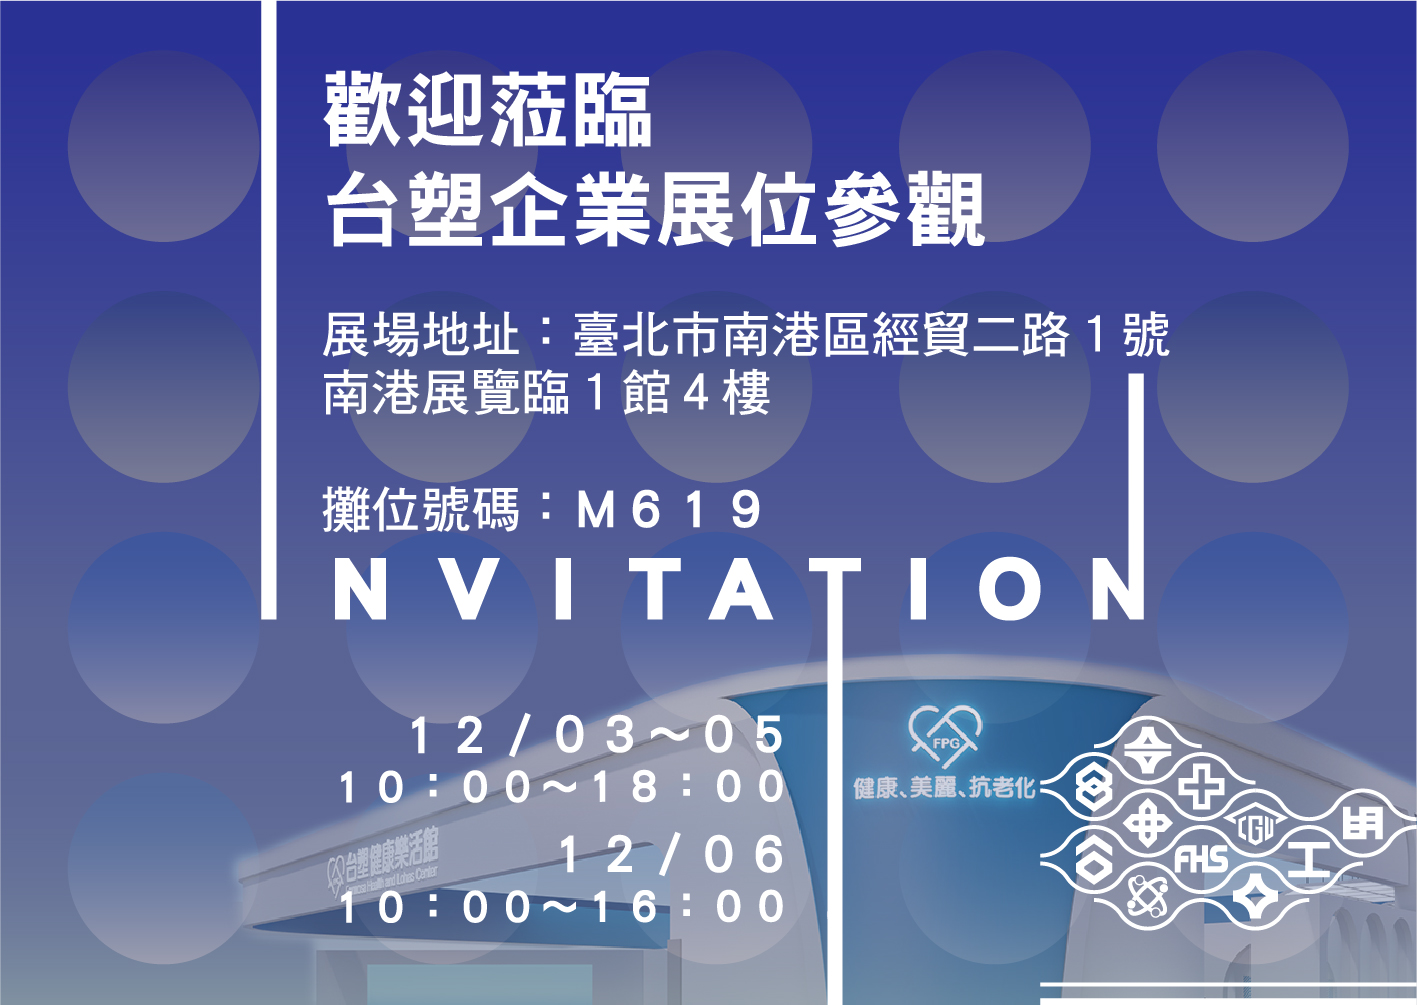 敬邀參觀2020年12月3日～12月6日「2020年度台灣醫療科技展」